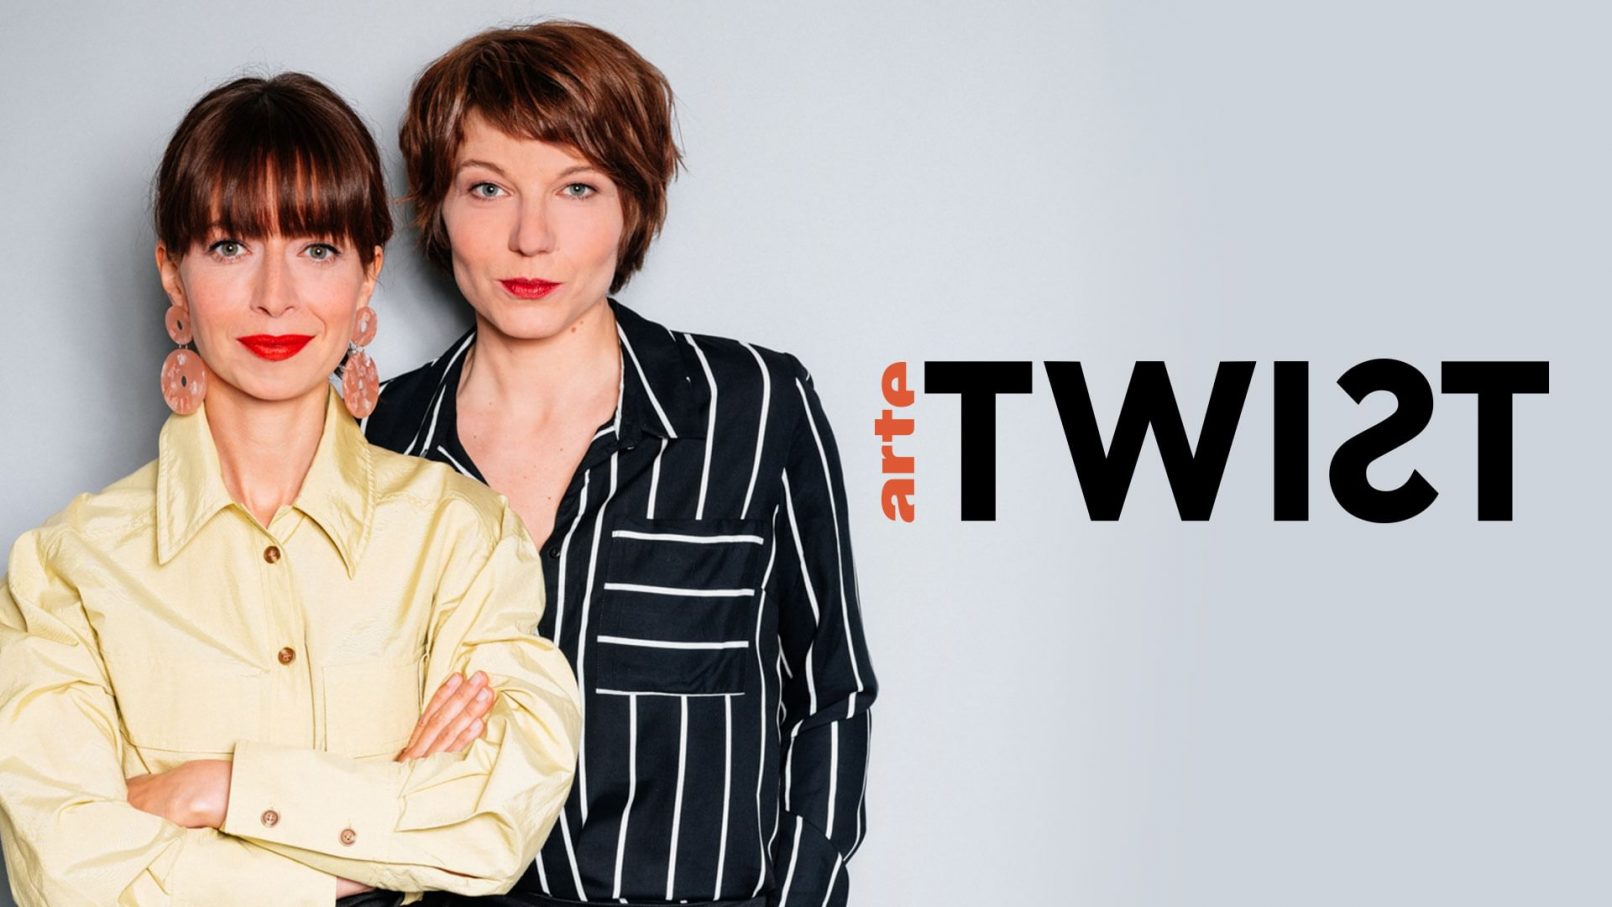 Zwei Frauen stehen nebeneinander und schauen in die Kamera. Rechts neben ihnen ist ein Logo mit der Aufschrift "Arte, Twist" abgebildet.